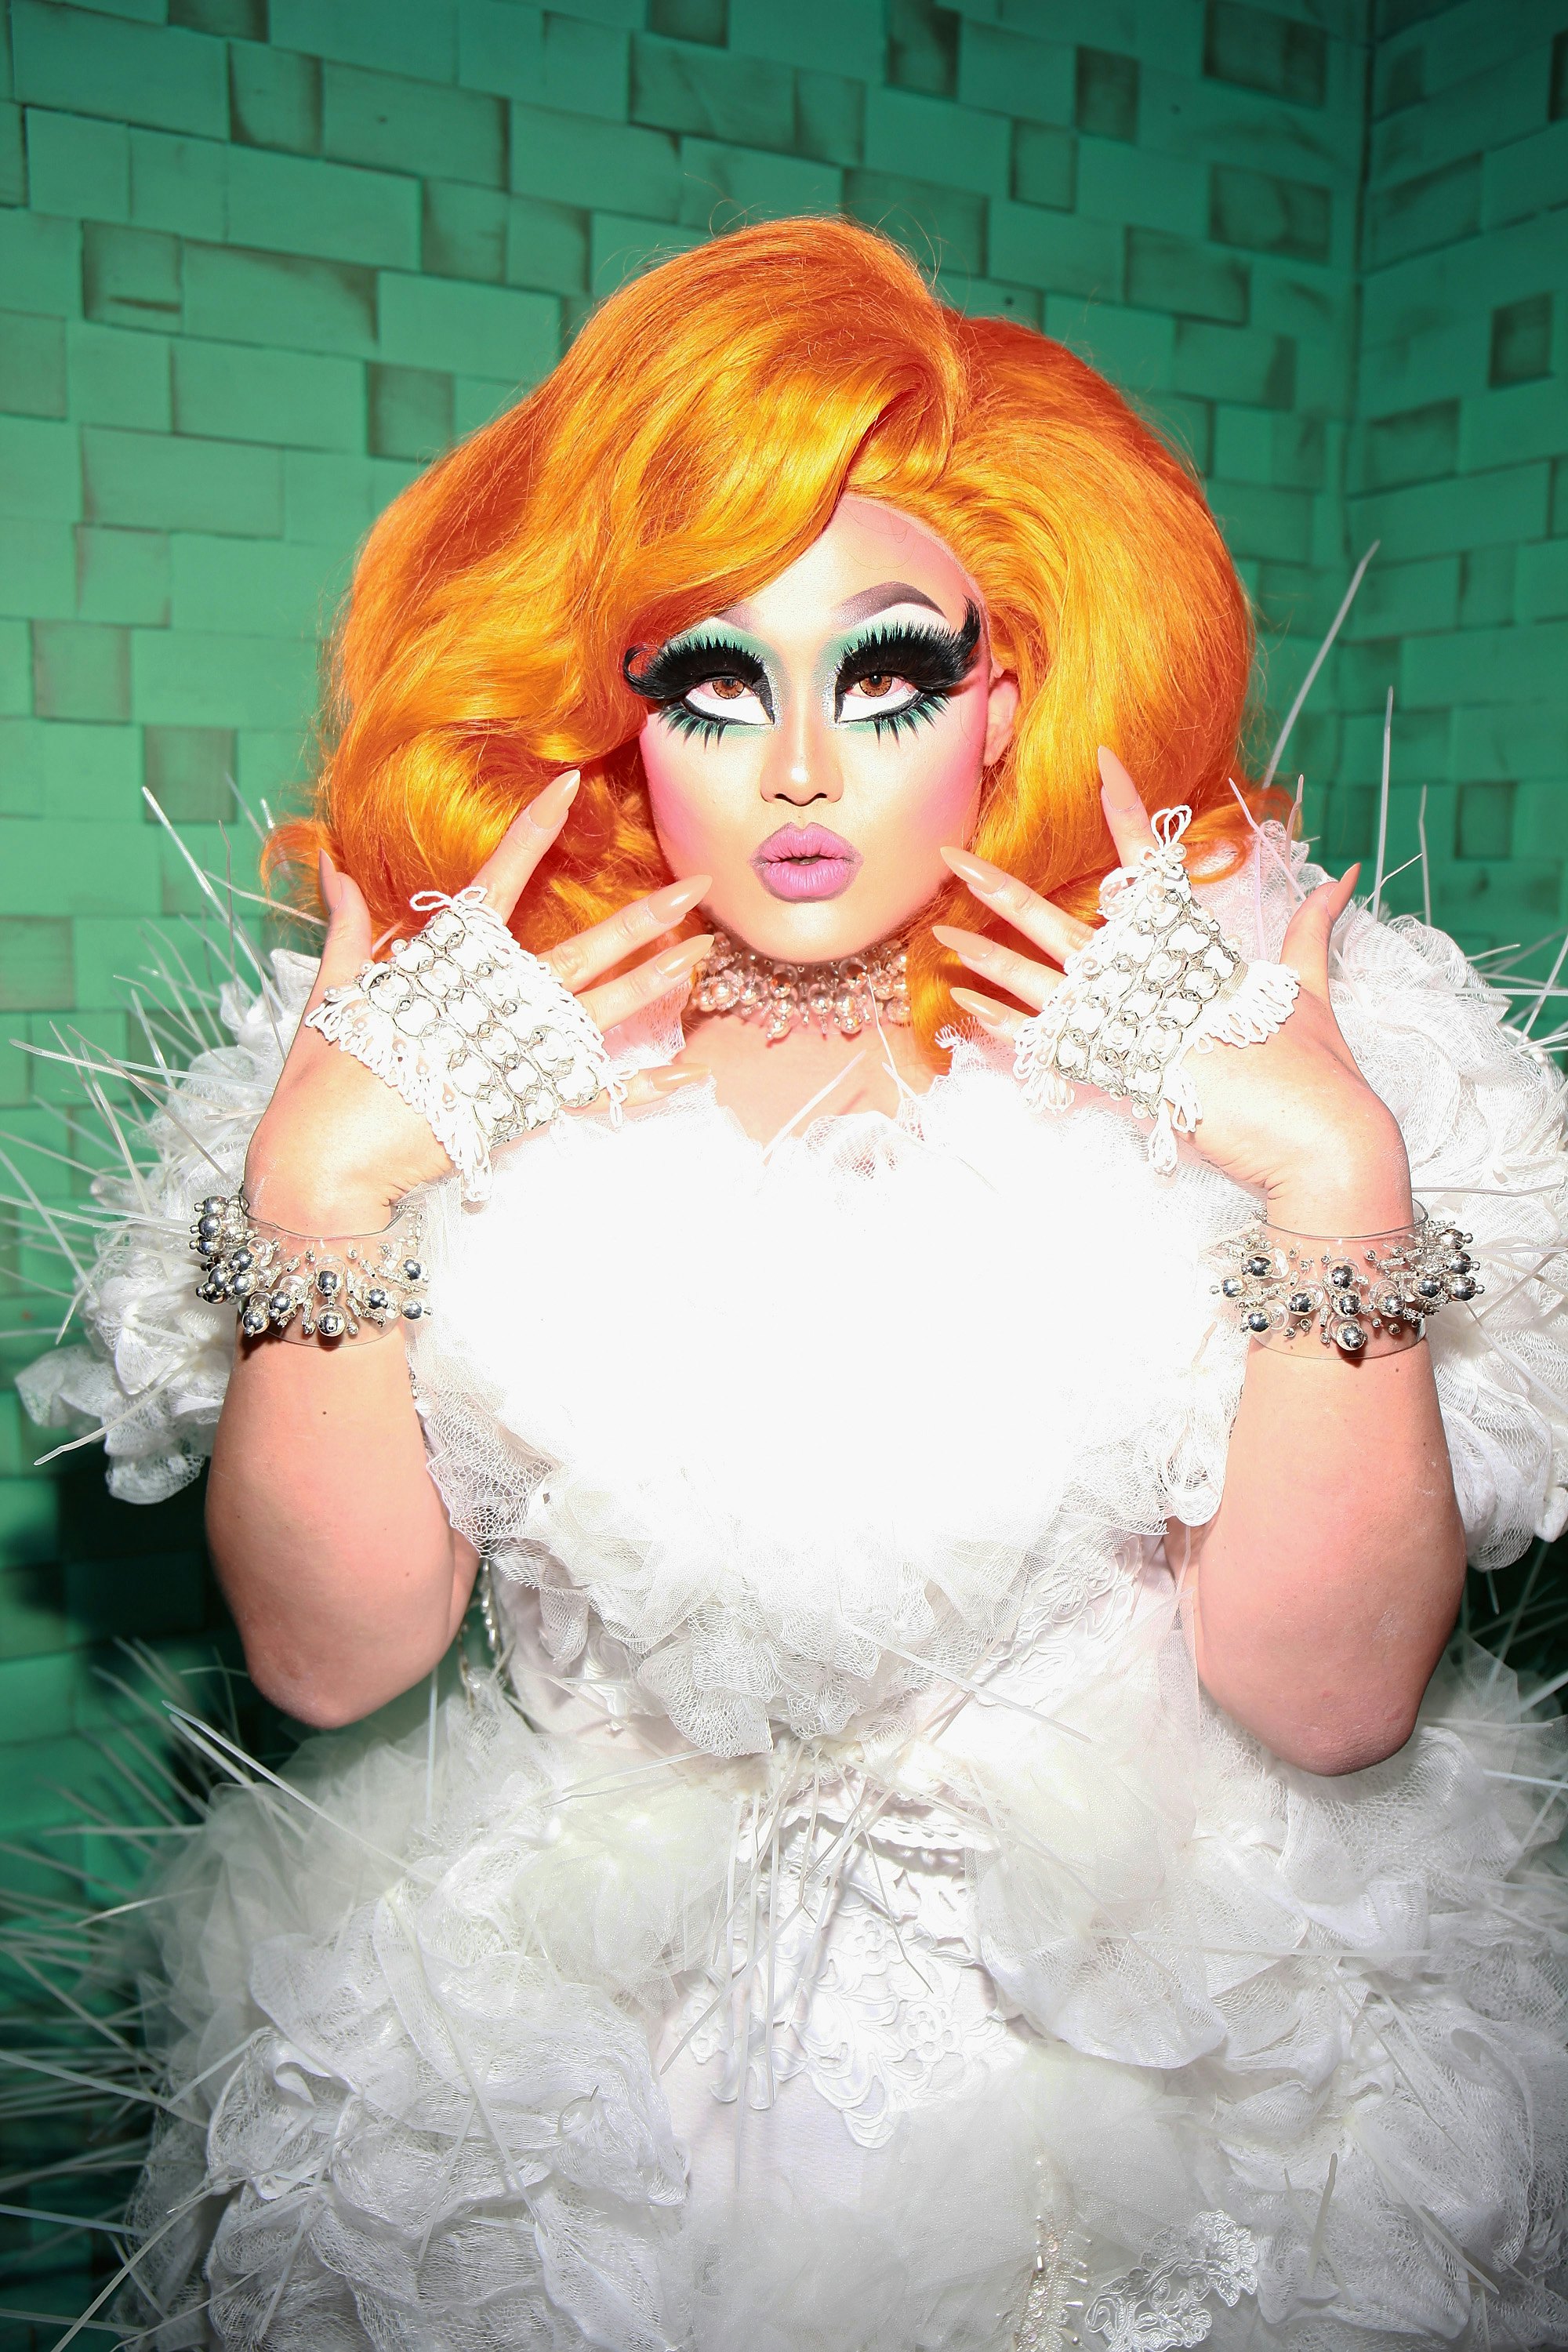 divine drag queen sucks cock